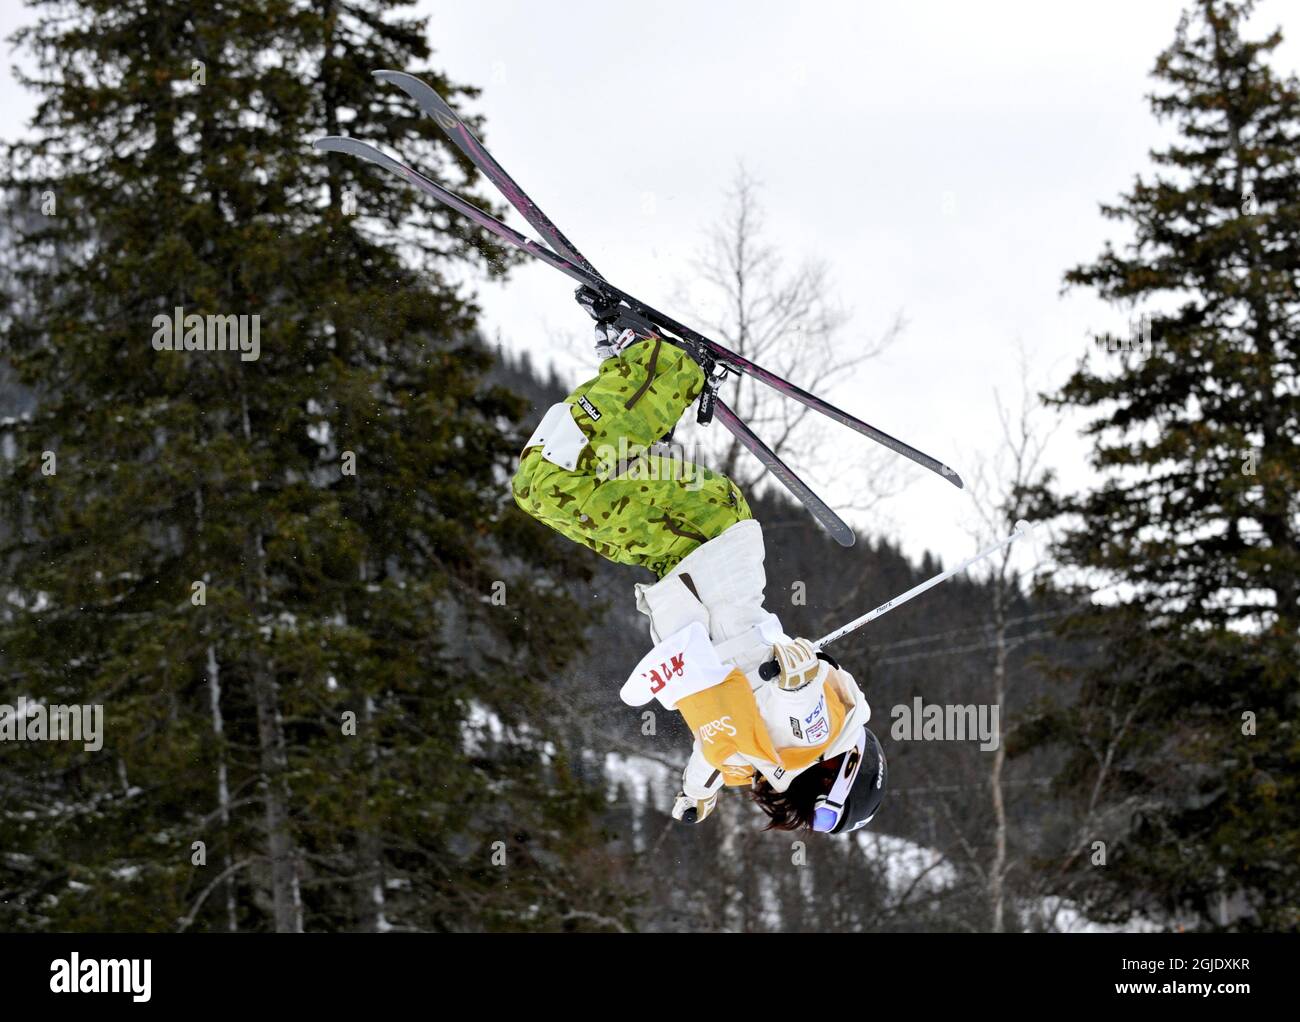 Aiko Uemura, Japan, springt um das Freestyle Skiing Frauen Dual Moguls World Cup Event in Are, Schweden zu gewinnen. Stockfoto